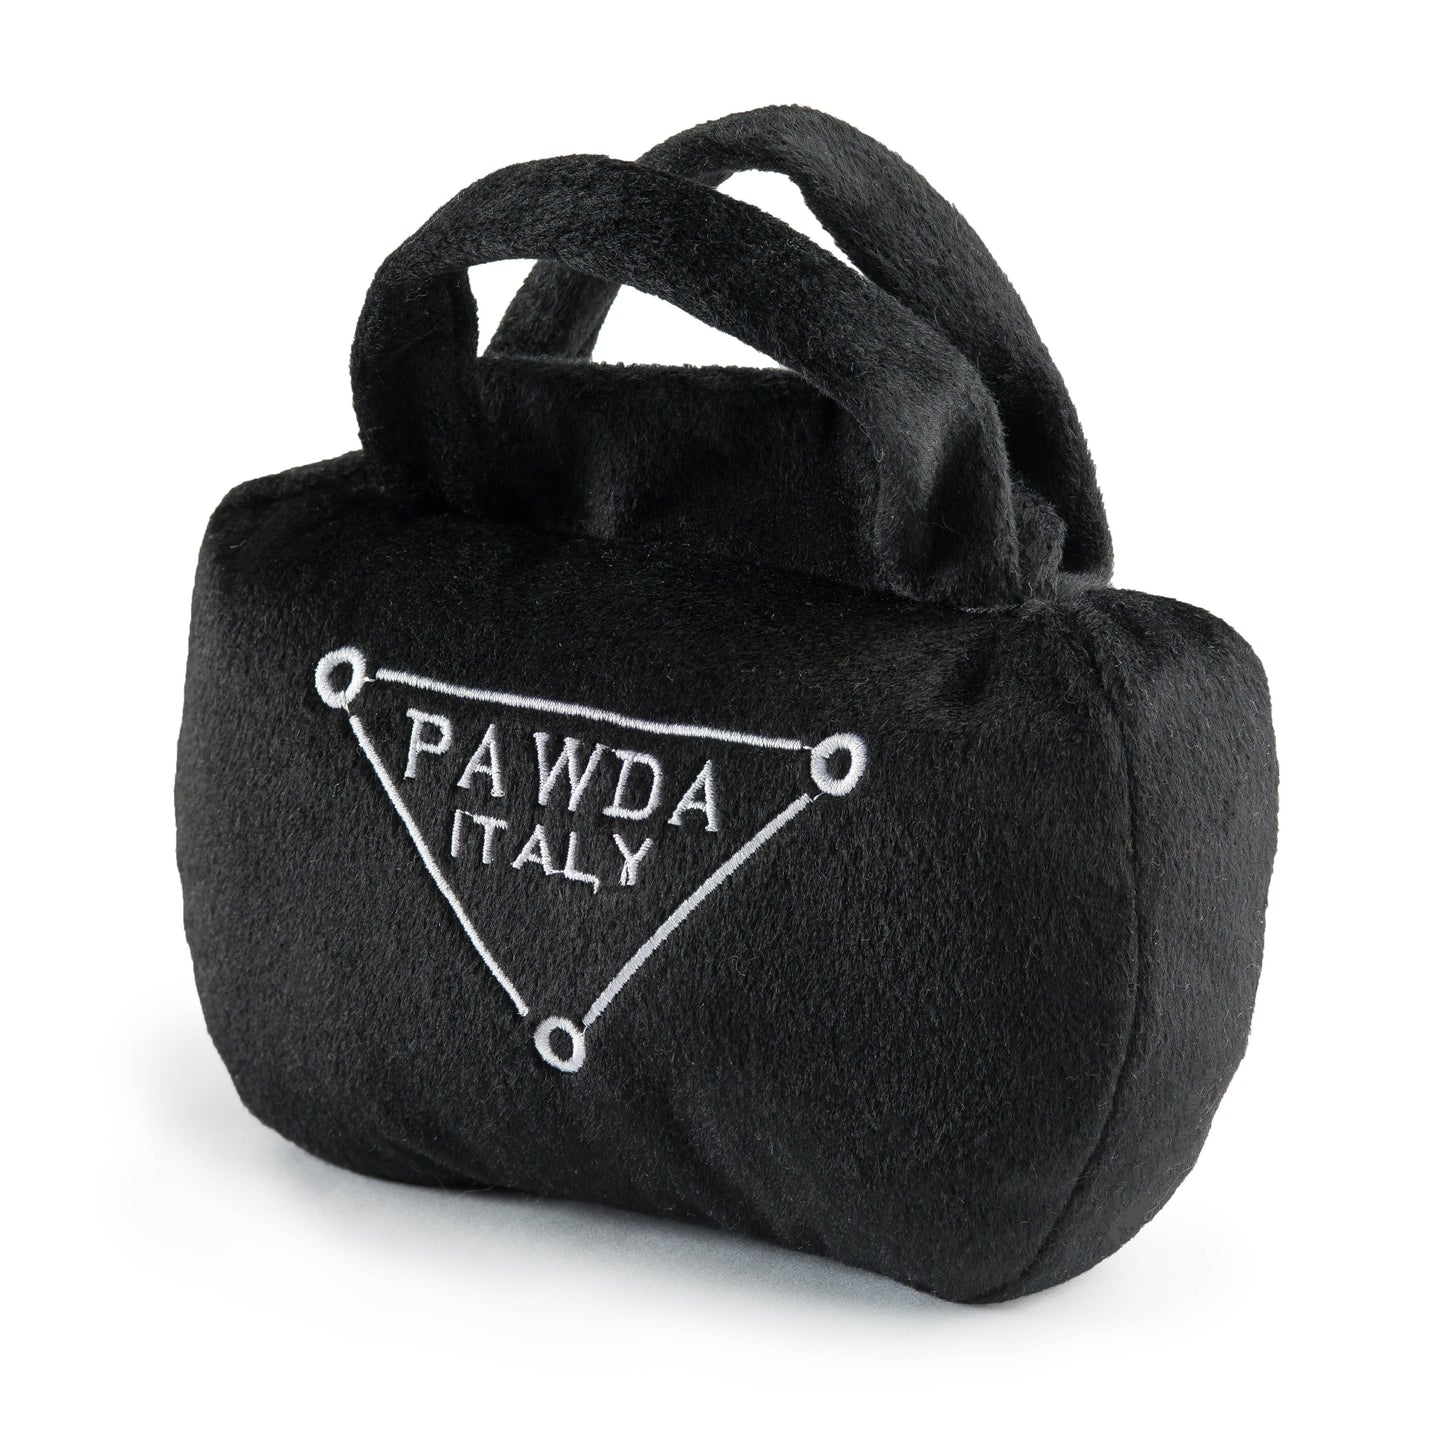 Pawda Handbag Squeaker Dog Toy: Small / Mini